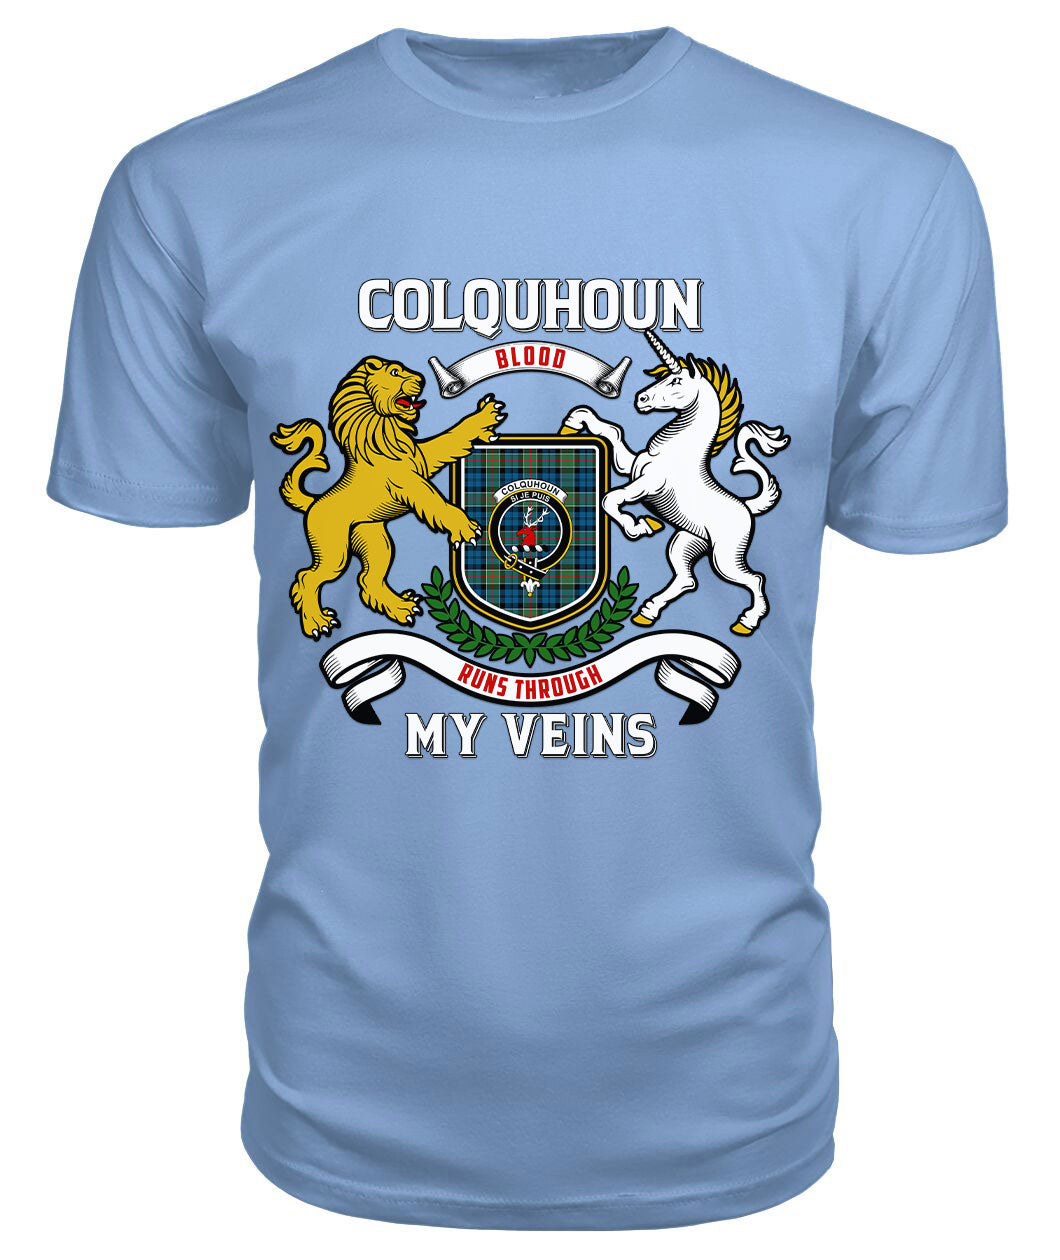 Colquhoun Ancient Tartan Crest 2D T-shirt - Blood Runs Through My Veins Style